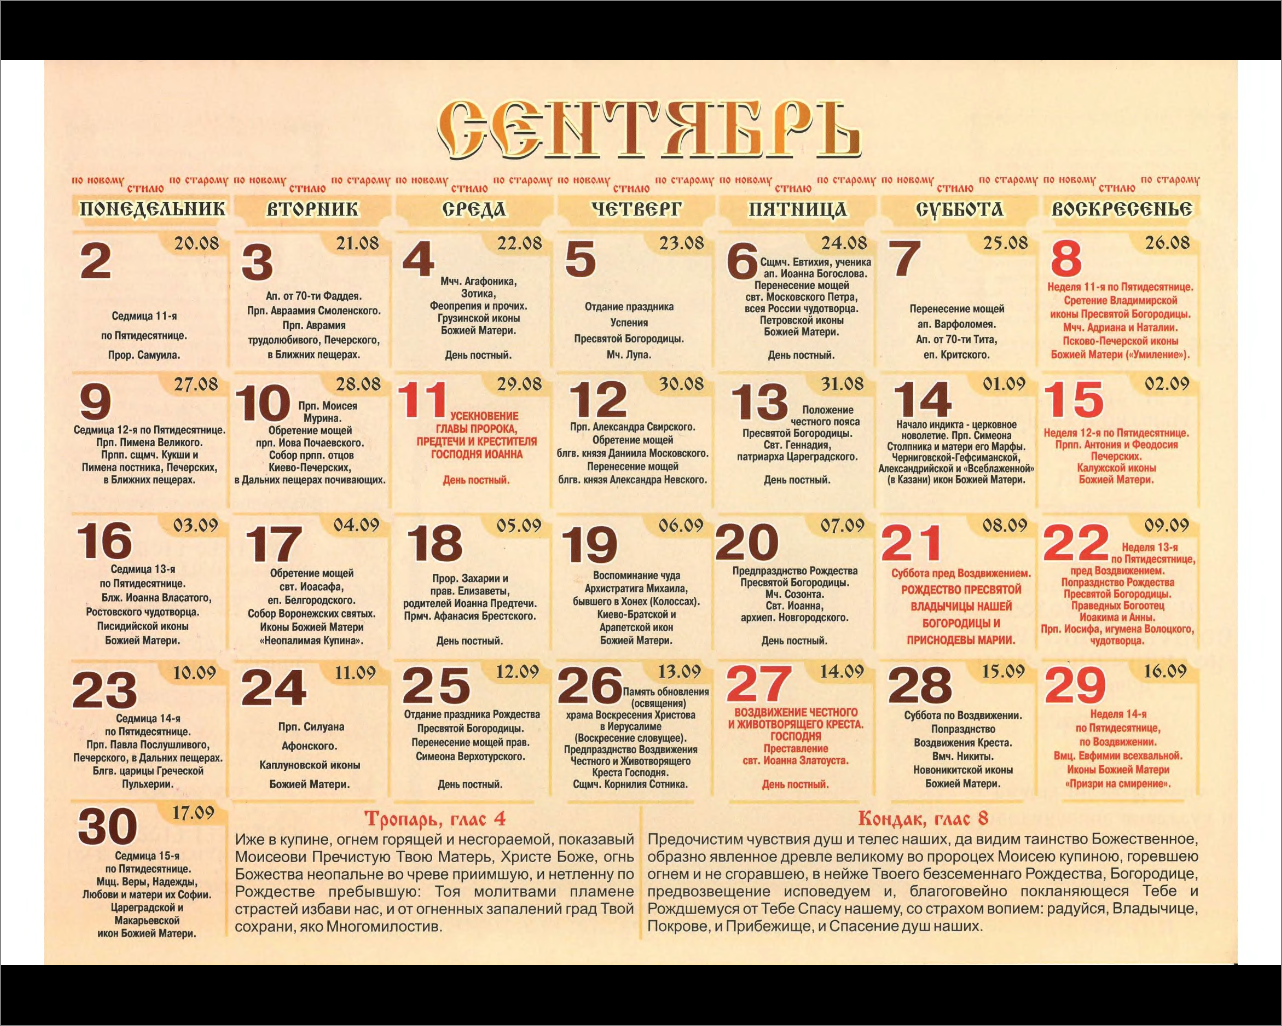 Именины лидии по православному календарю 2024